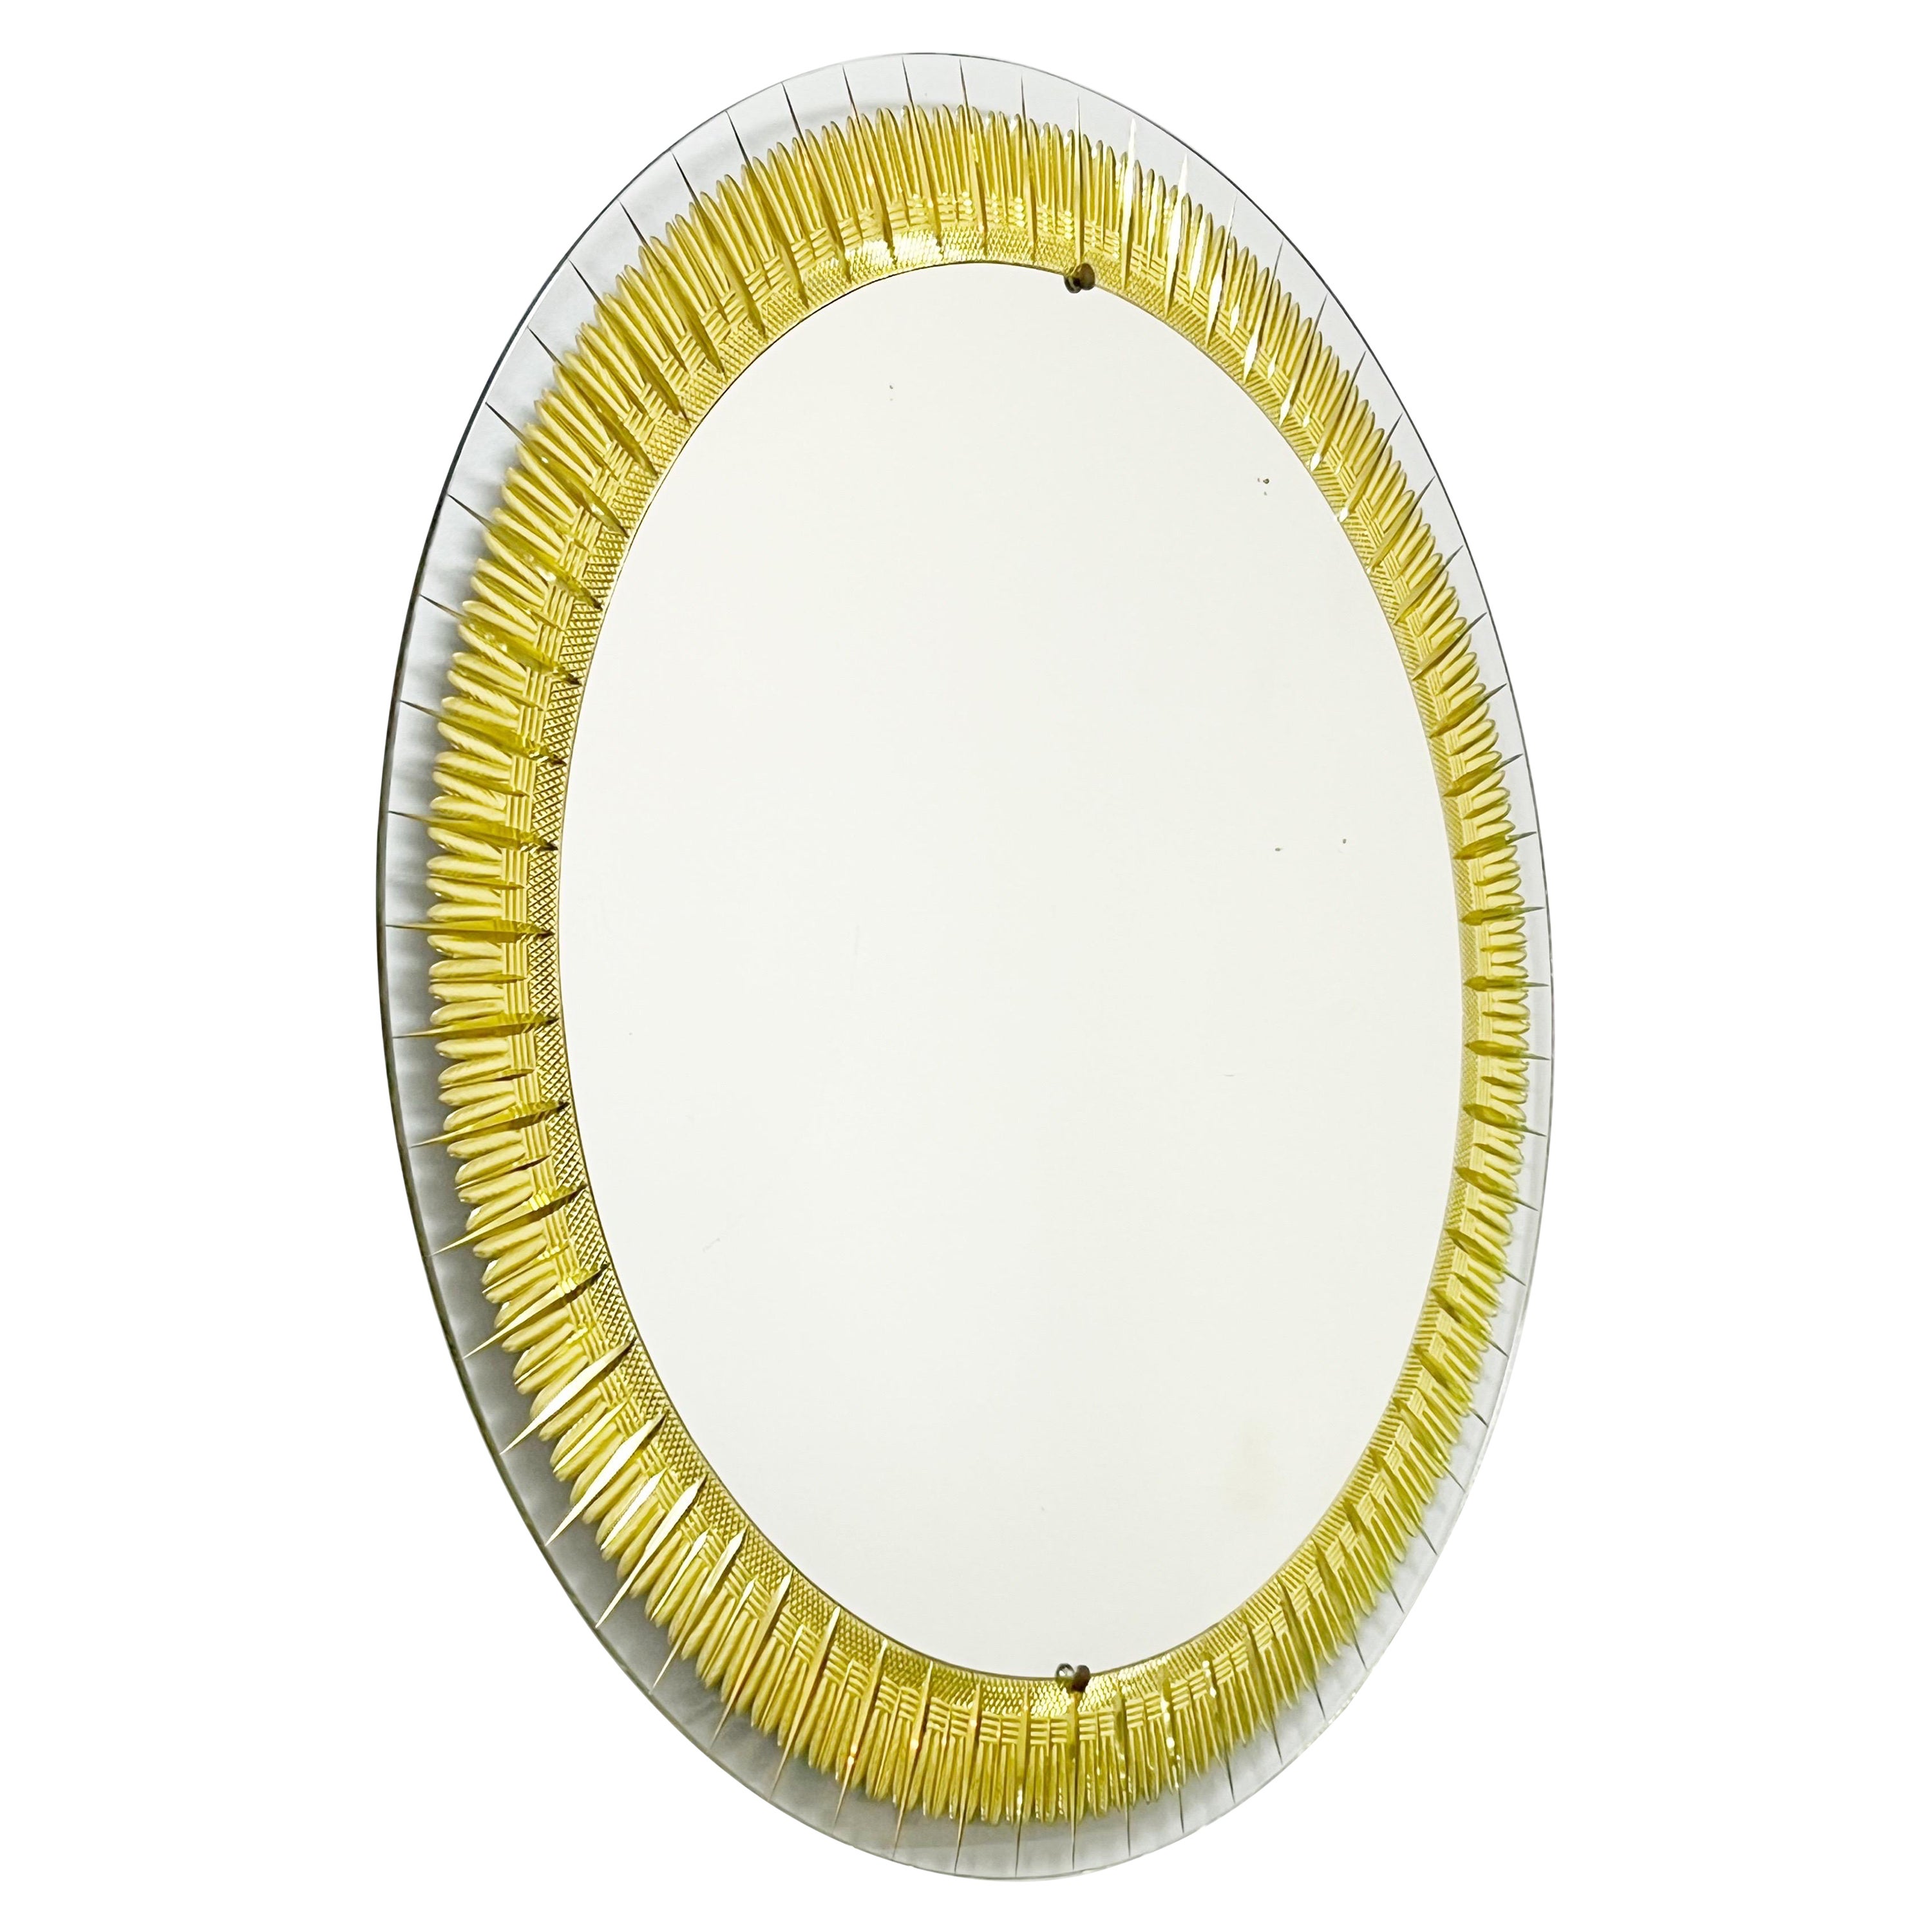 Cristal Art Italienischer runder geschliffener und vergoldeter moderner Spiegel, 1950er Jahre